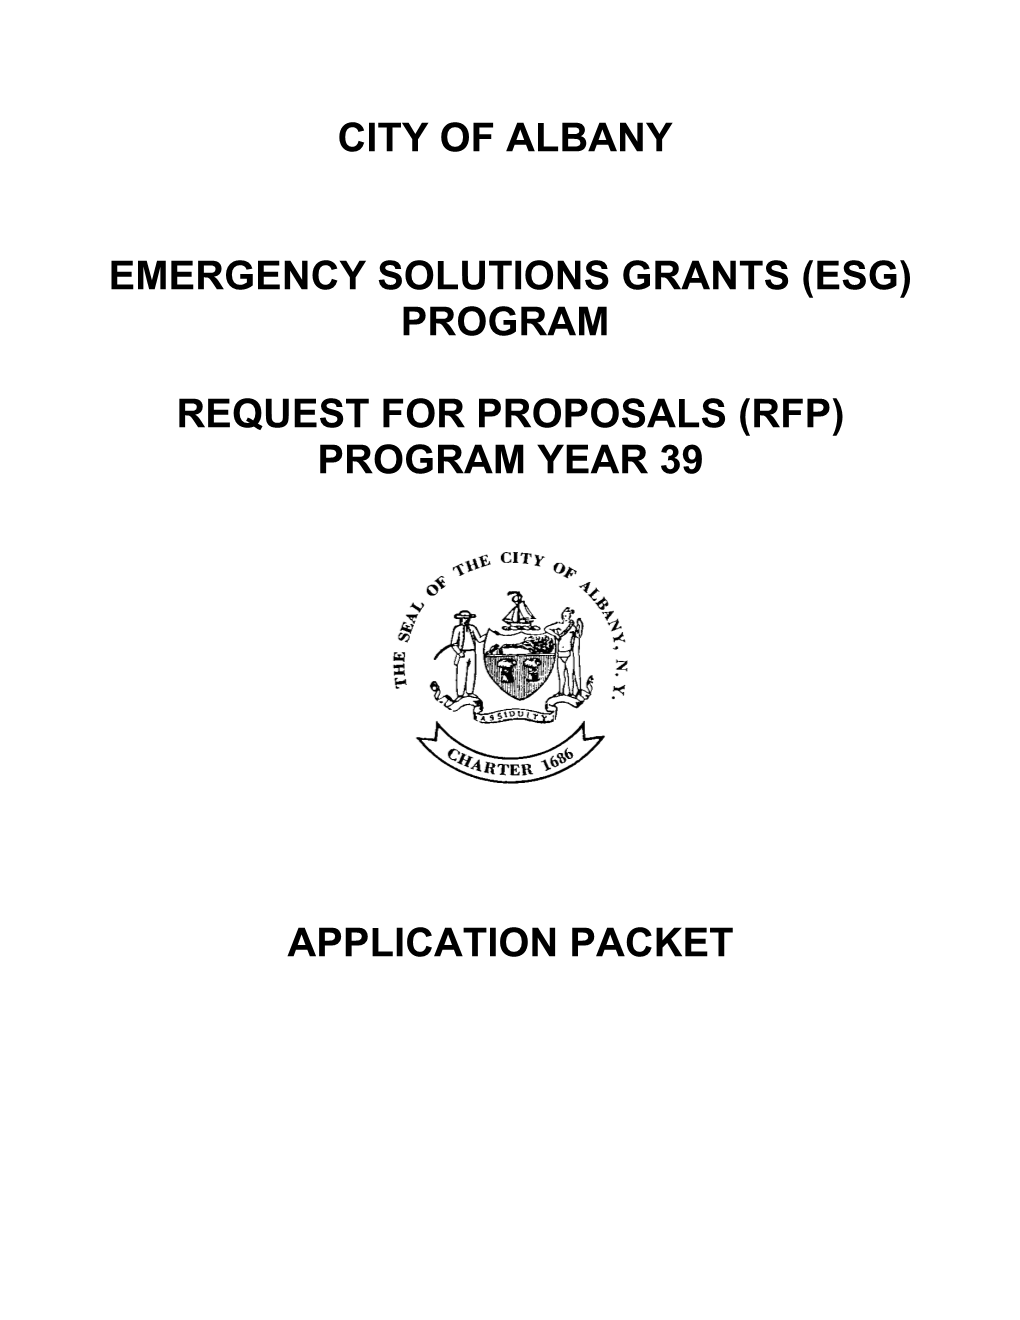 Emergency Shelter Grant Program